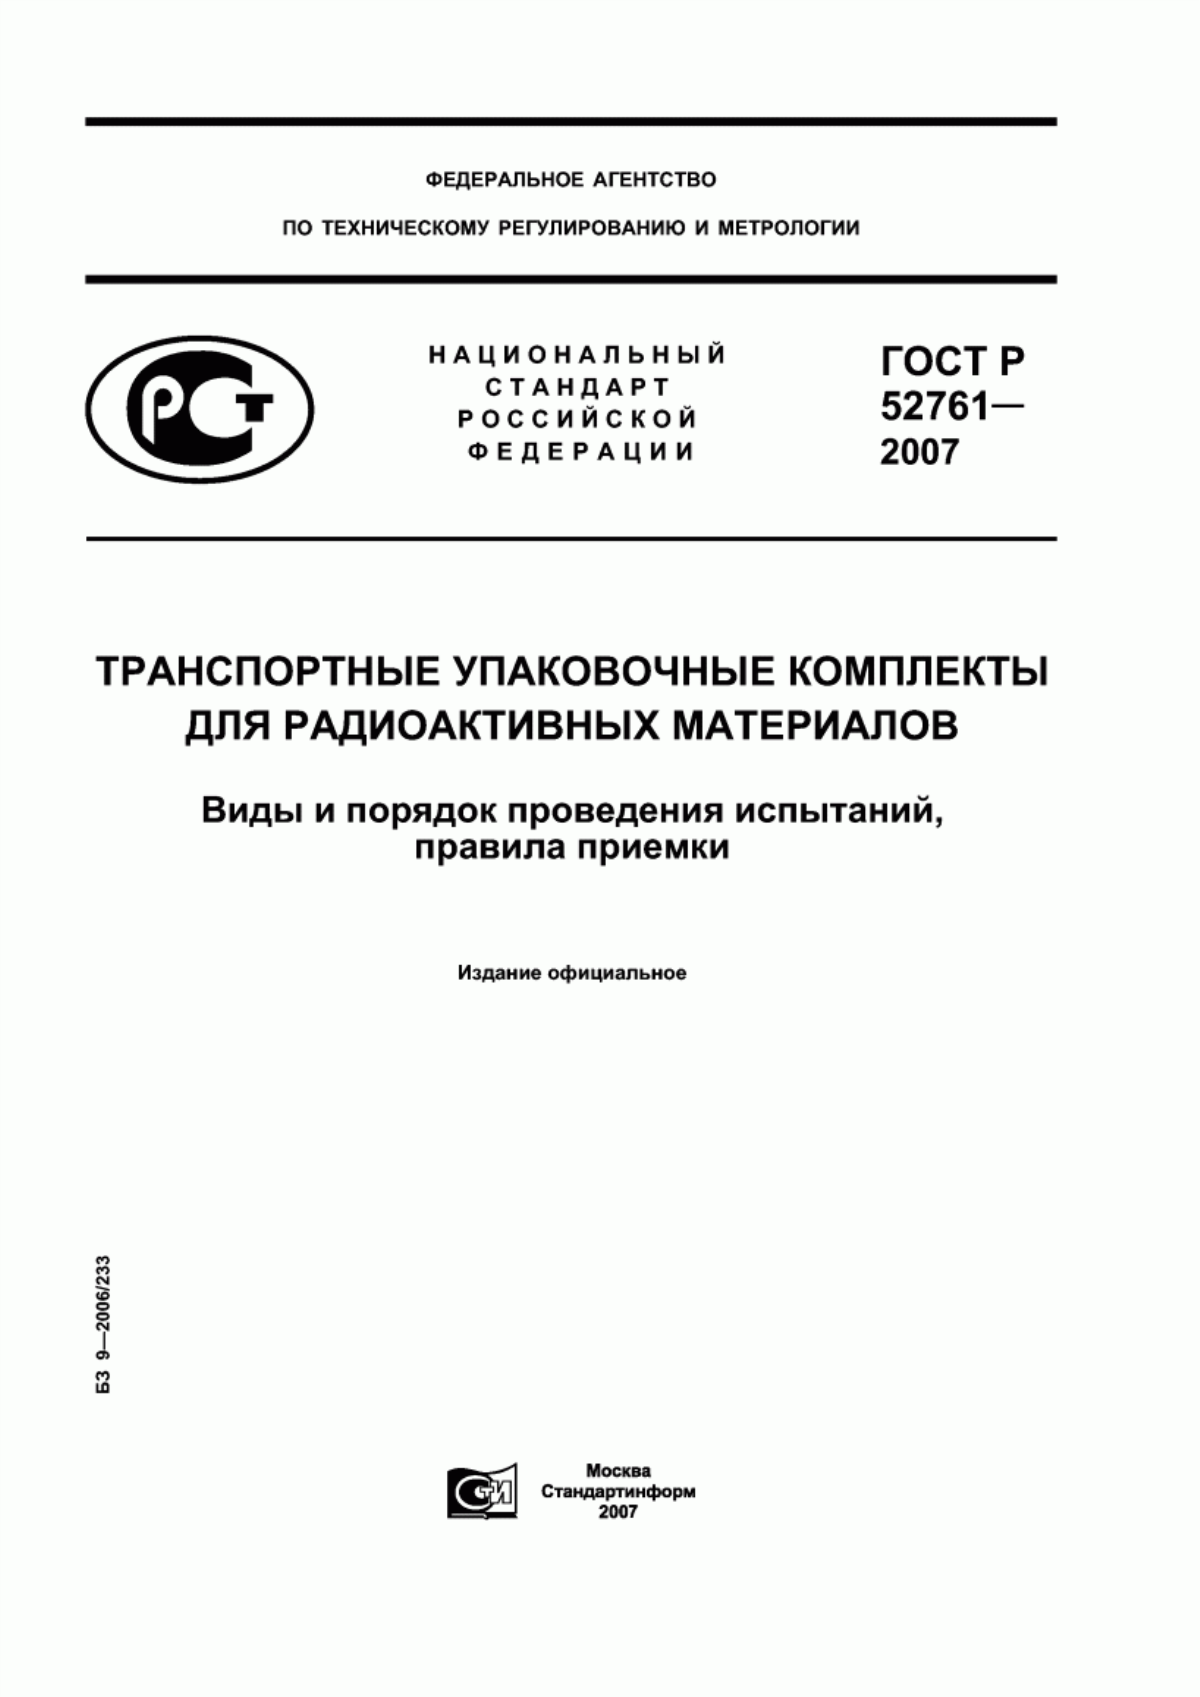 ГОСТ Р 52761-2007 Транспортные упаковочные комплекты для радиоактивных материалов. Виды и порядок проведения испытаний, правила приемки